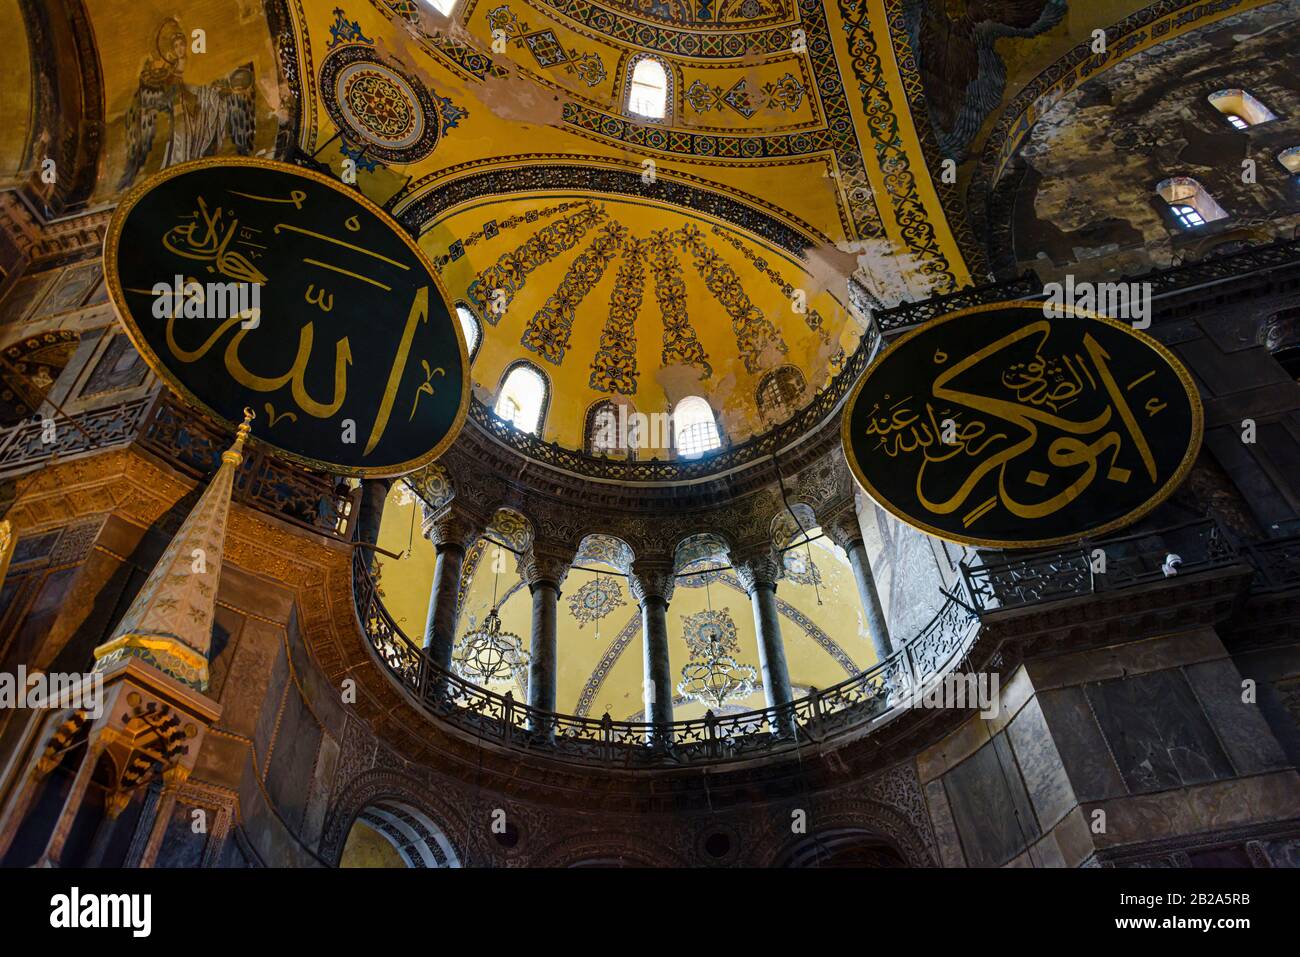 Verzierte Kuppel und bemalte Bögen mit später hinzugefügten islamischen Bannern im Hagia Sofia Museum, Istanbul, Türkei Stockfoto